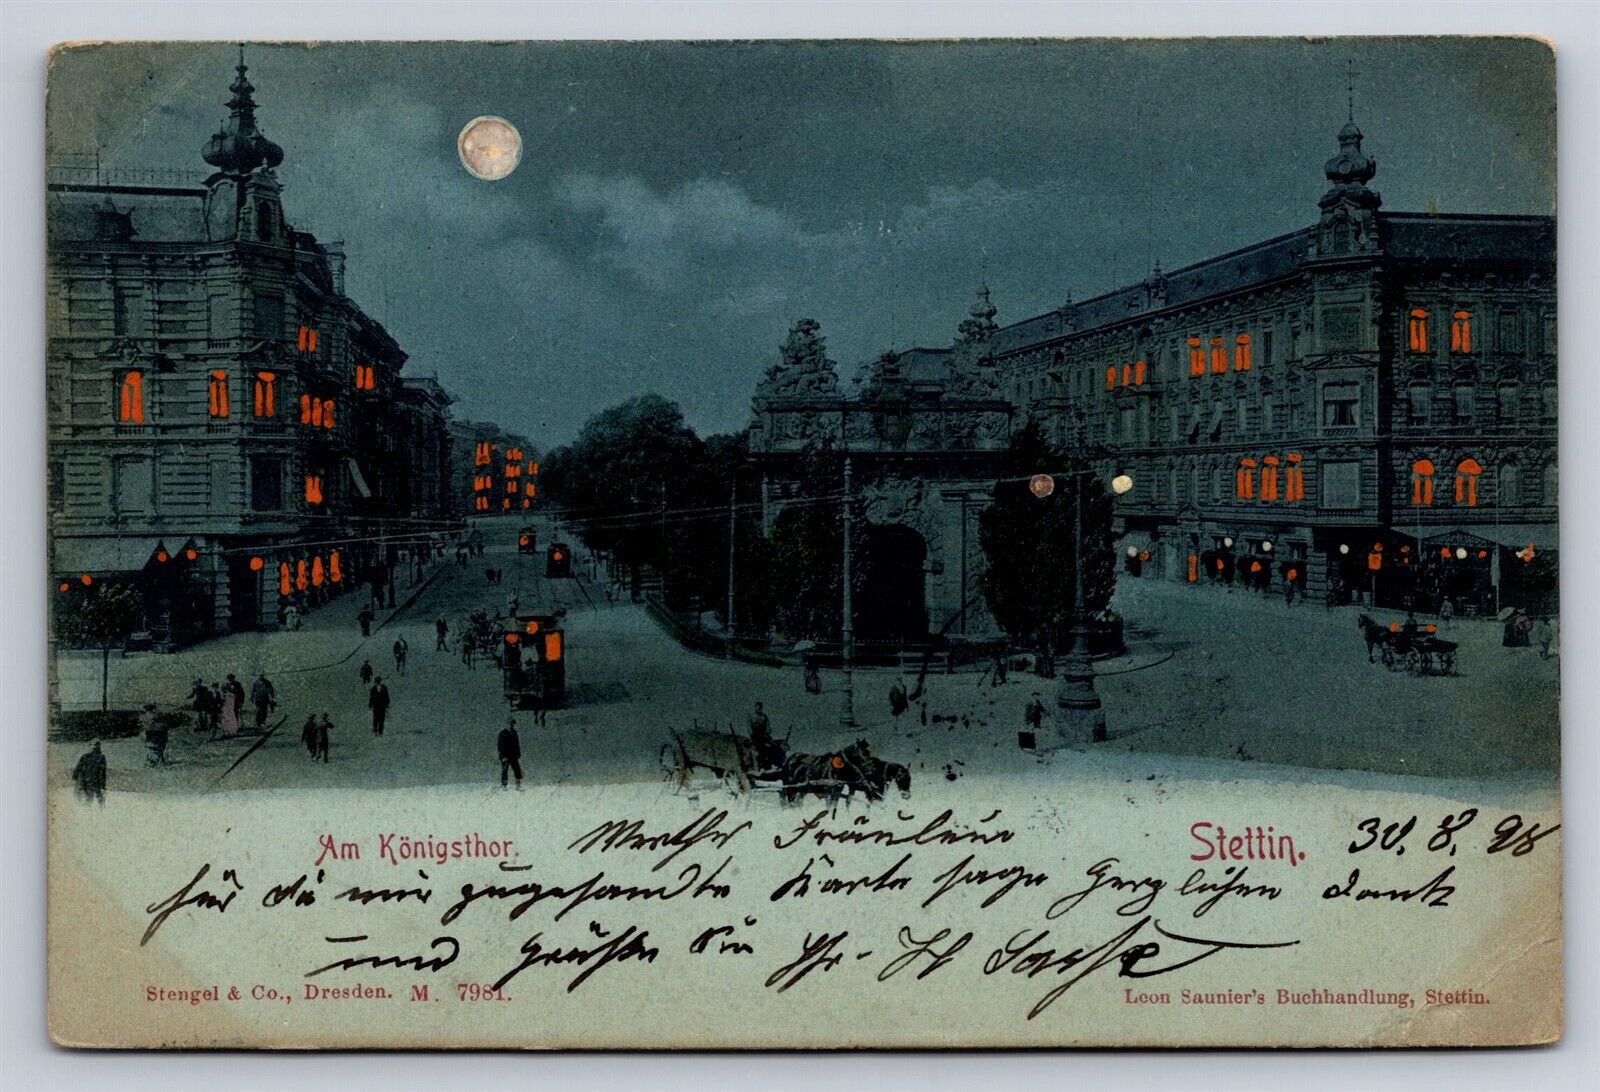 Postcard Germany Poland Stettin Szczecin Town View Night Konigsthor c1898 AD26